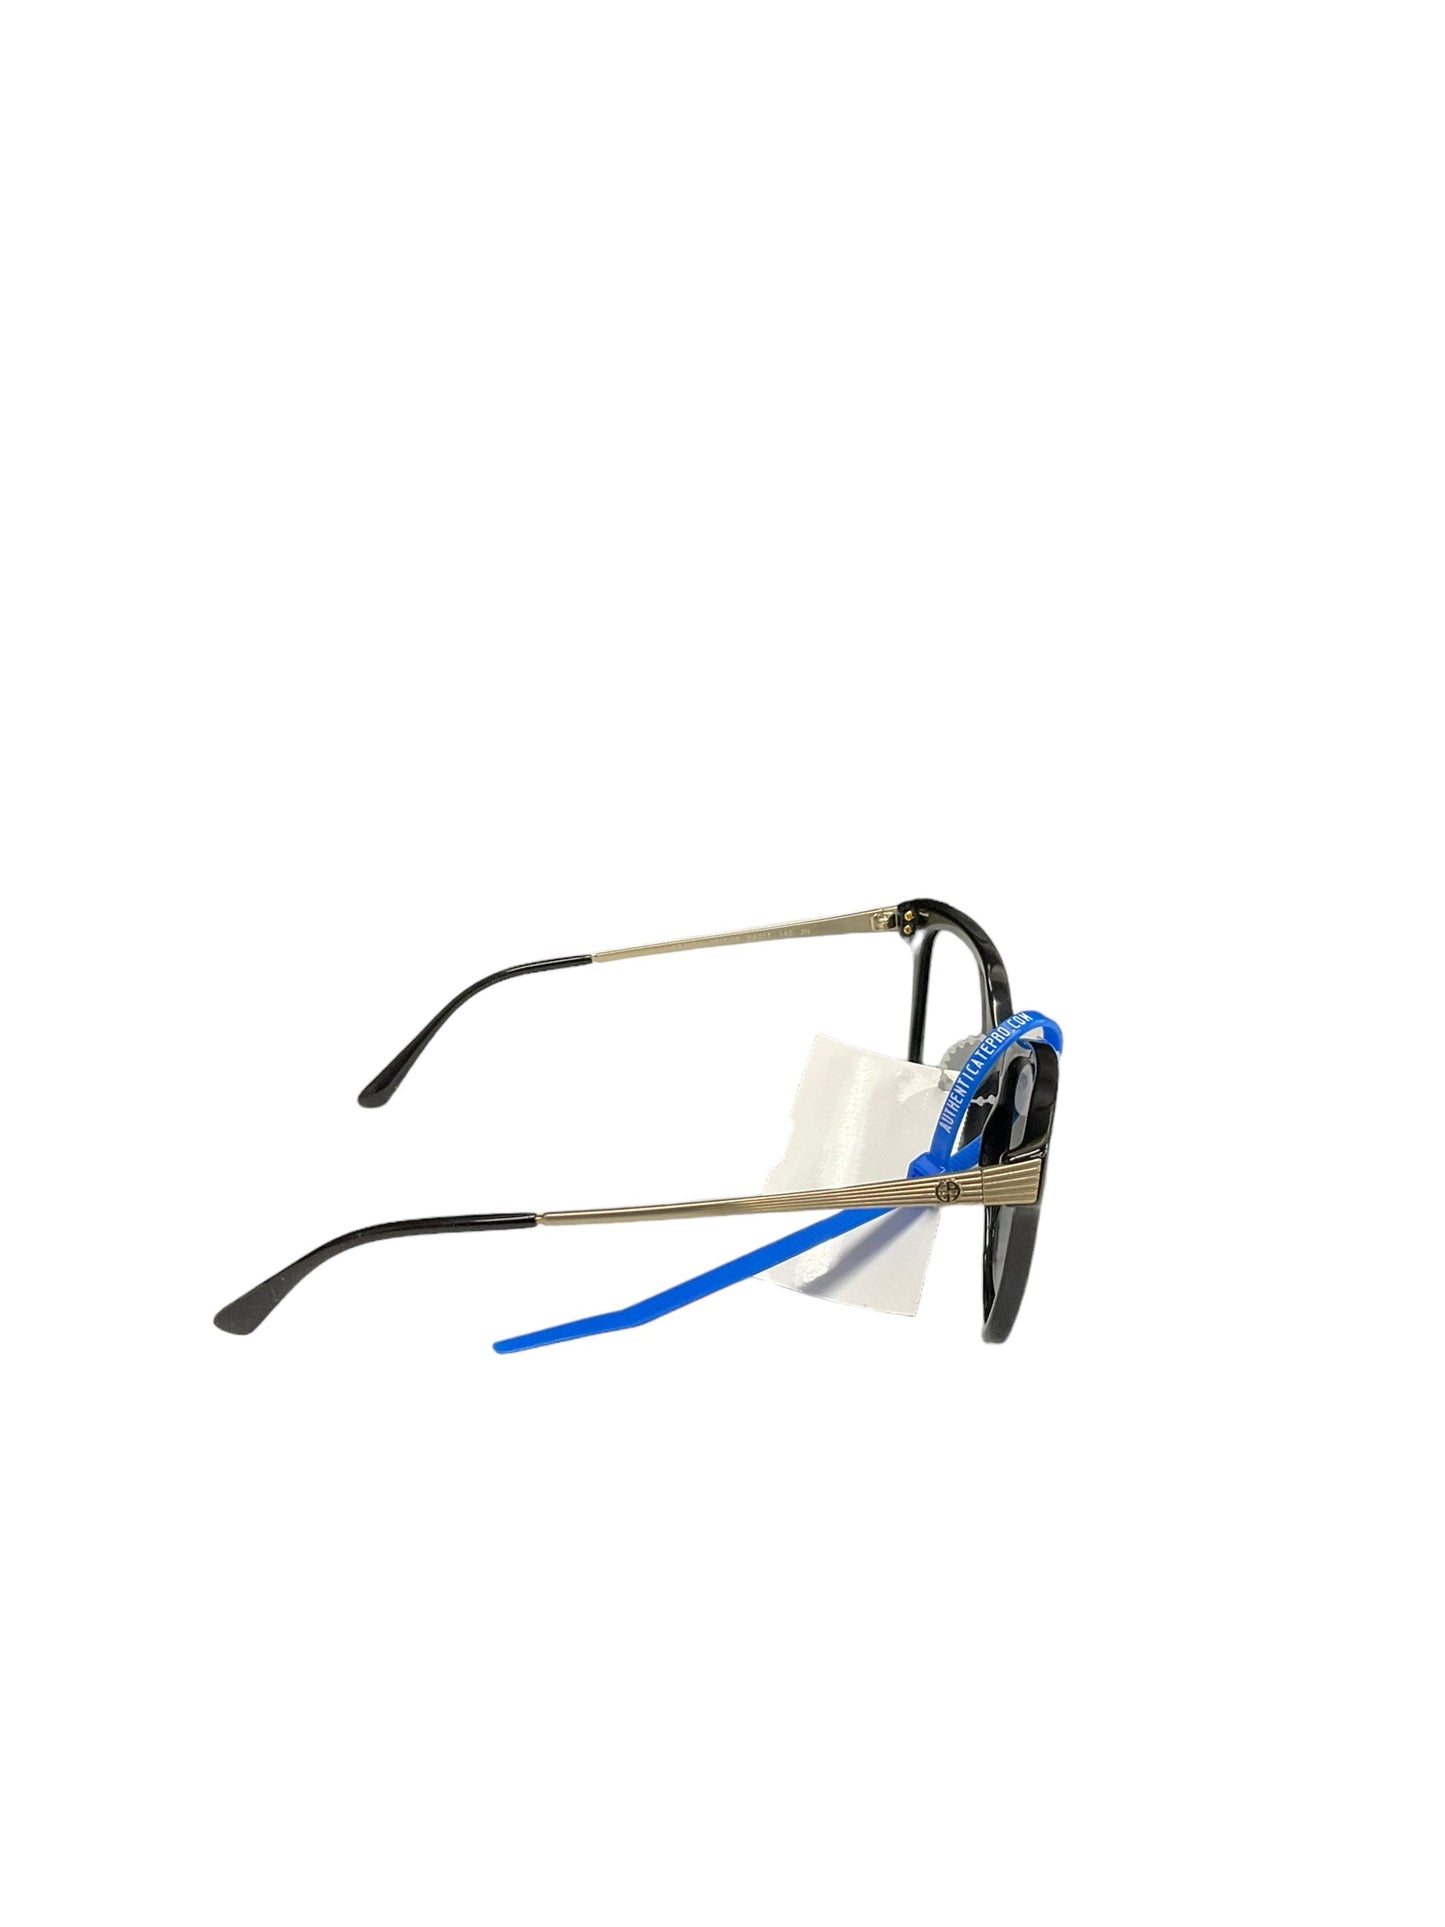 Sunglasses Designer Giorgio Armani